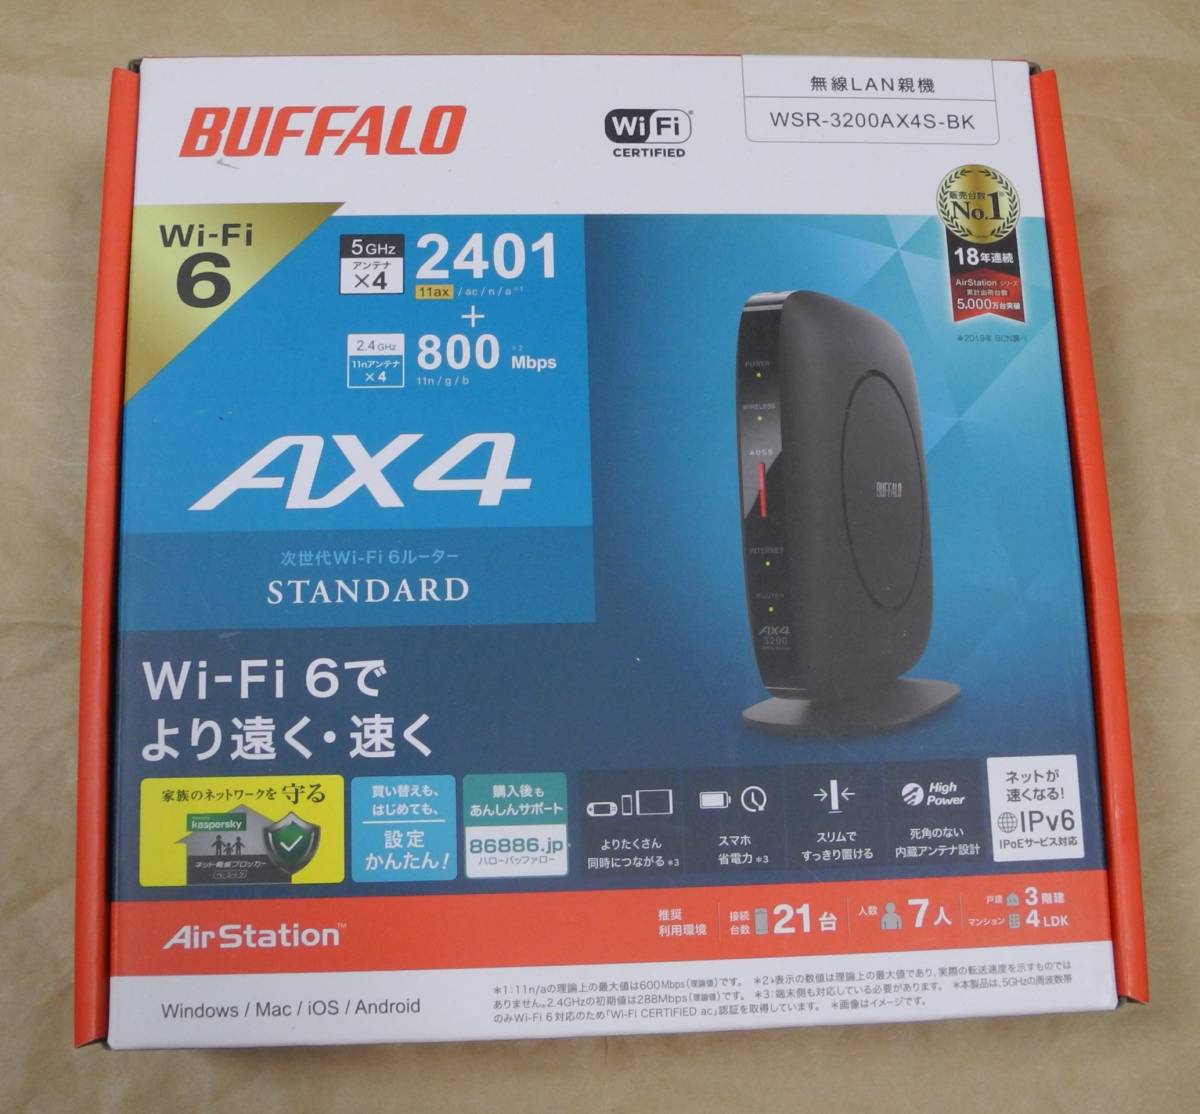 ほぼ新品 buffalo 無線LAN ルーター WSR-3200AX4S-BK 無線LAN親機 バッファロー WSR-3200AX4S 黒 ブラック AirStation wi-fi 6_画像1